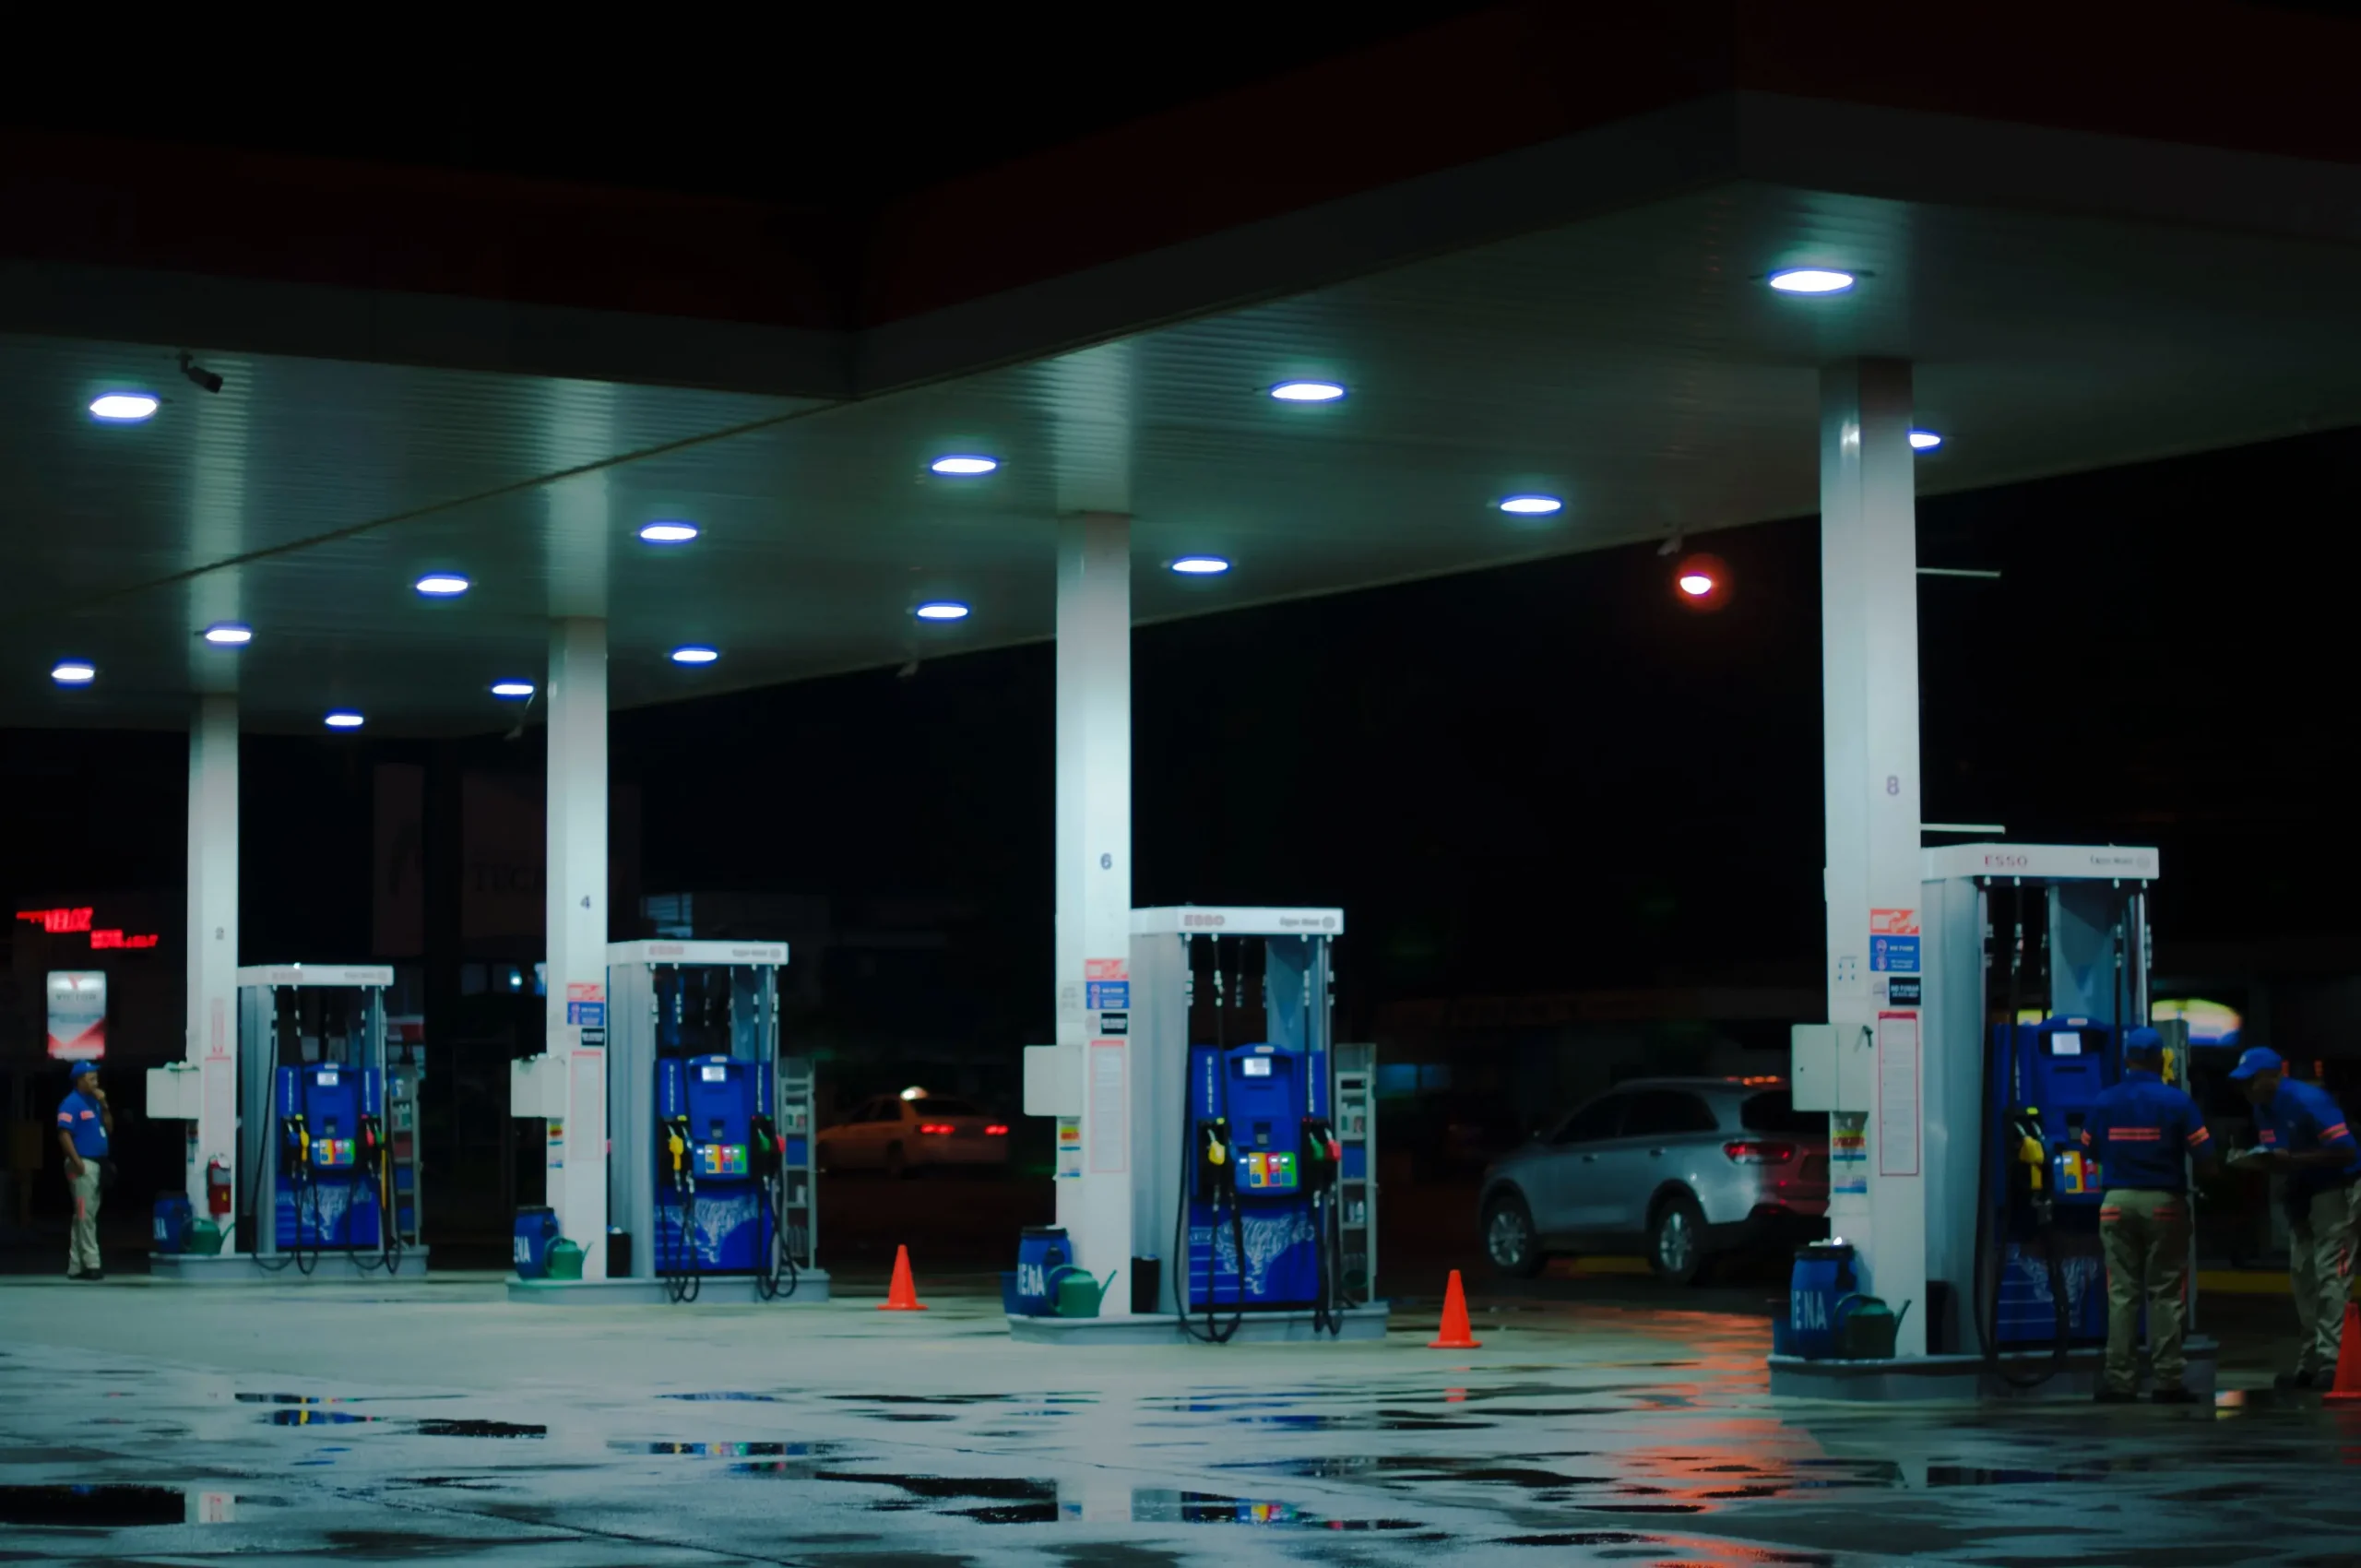 Pénurie d’essence : quelles conséquences pour les Taxis et les usagers ?